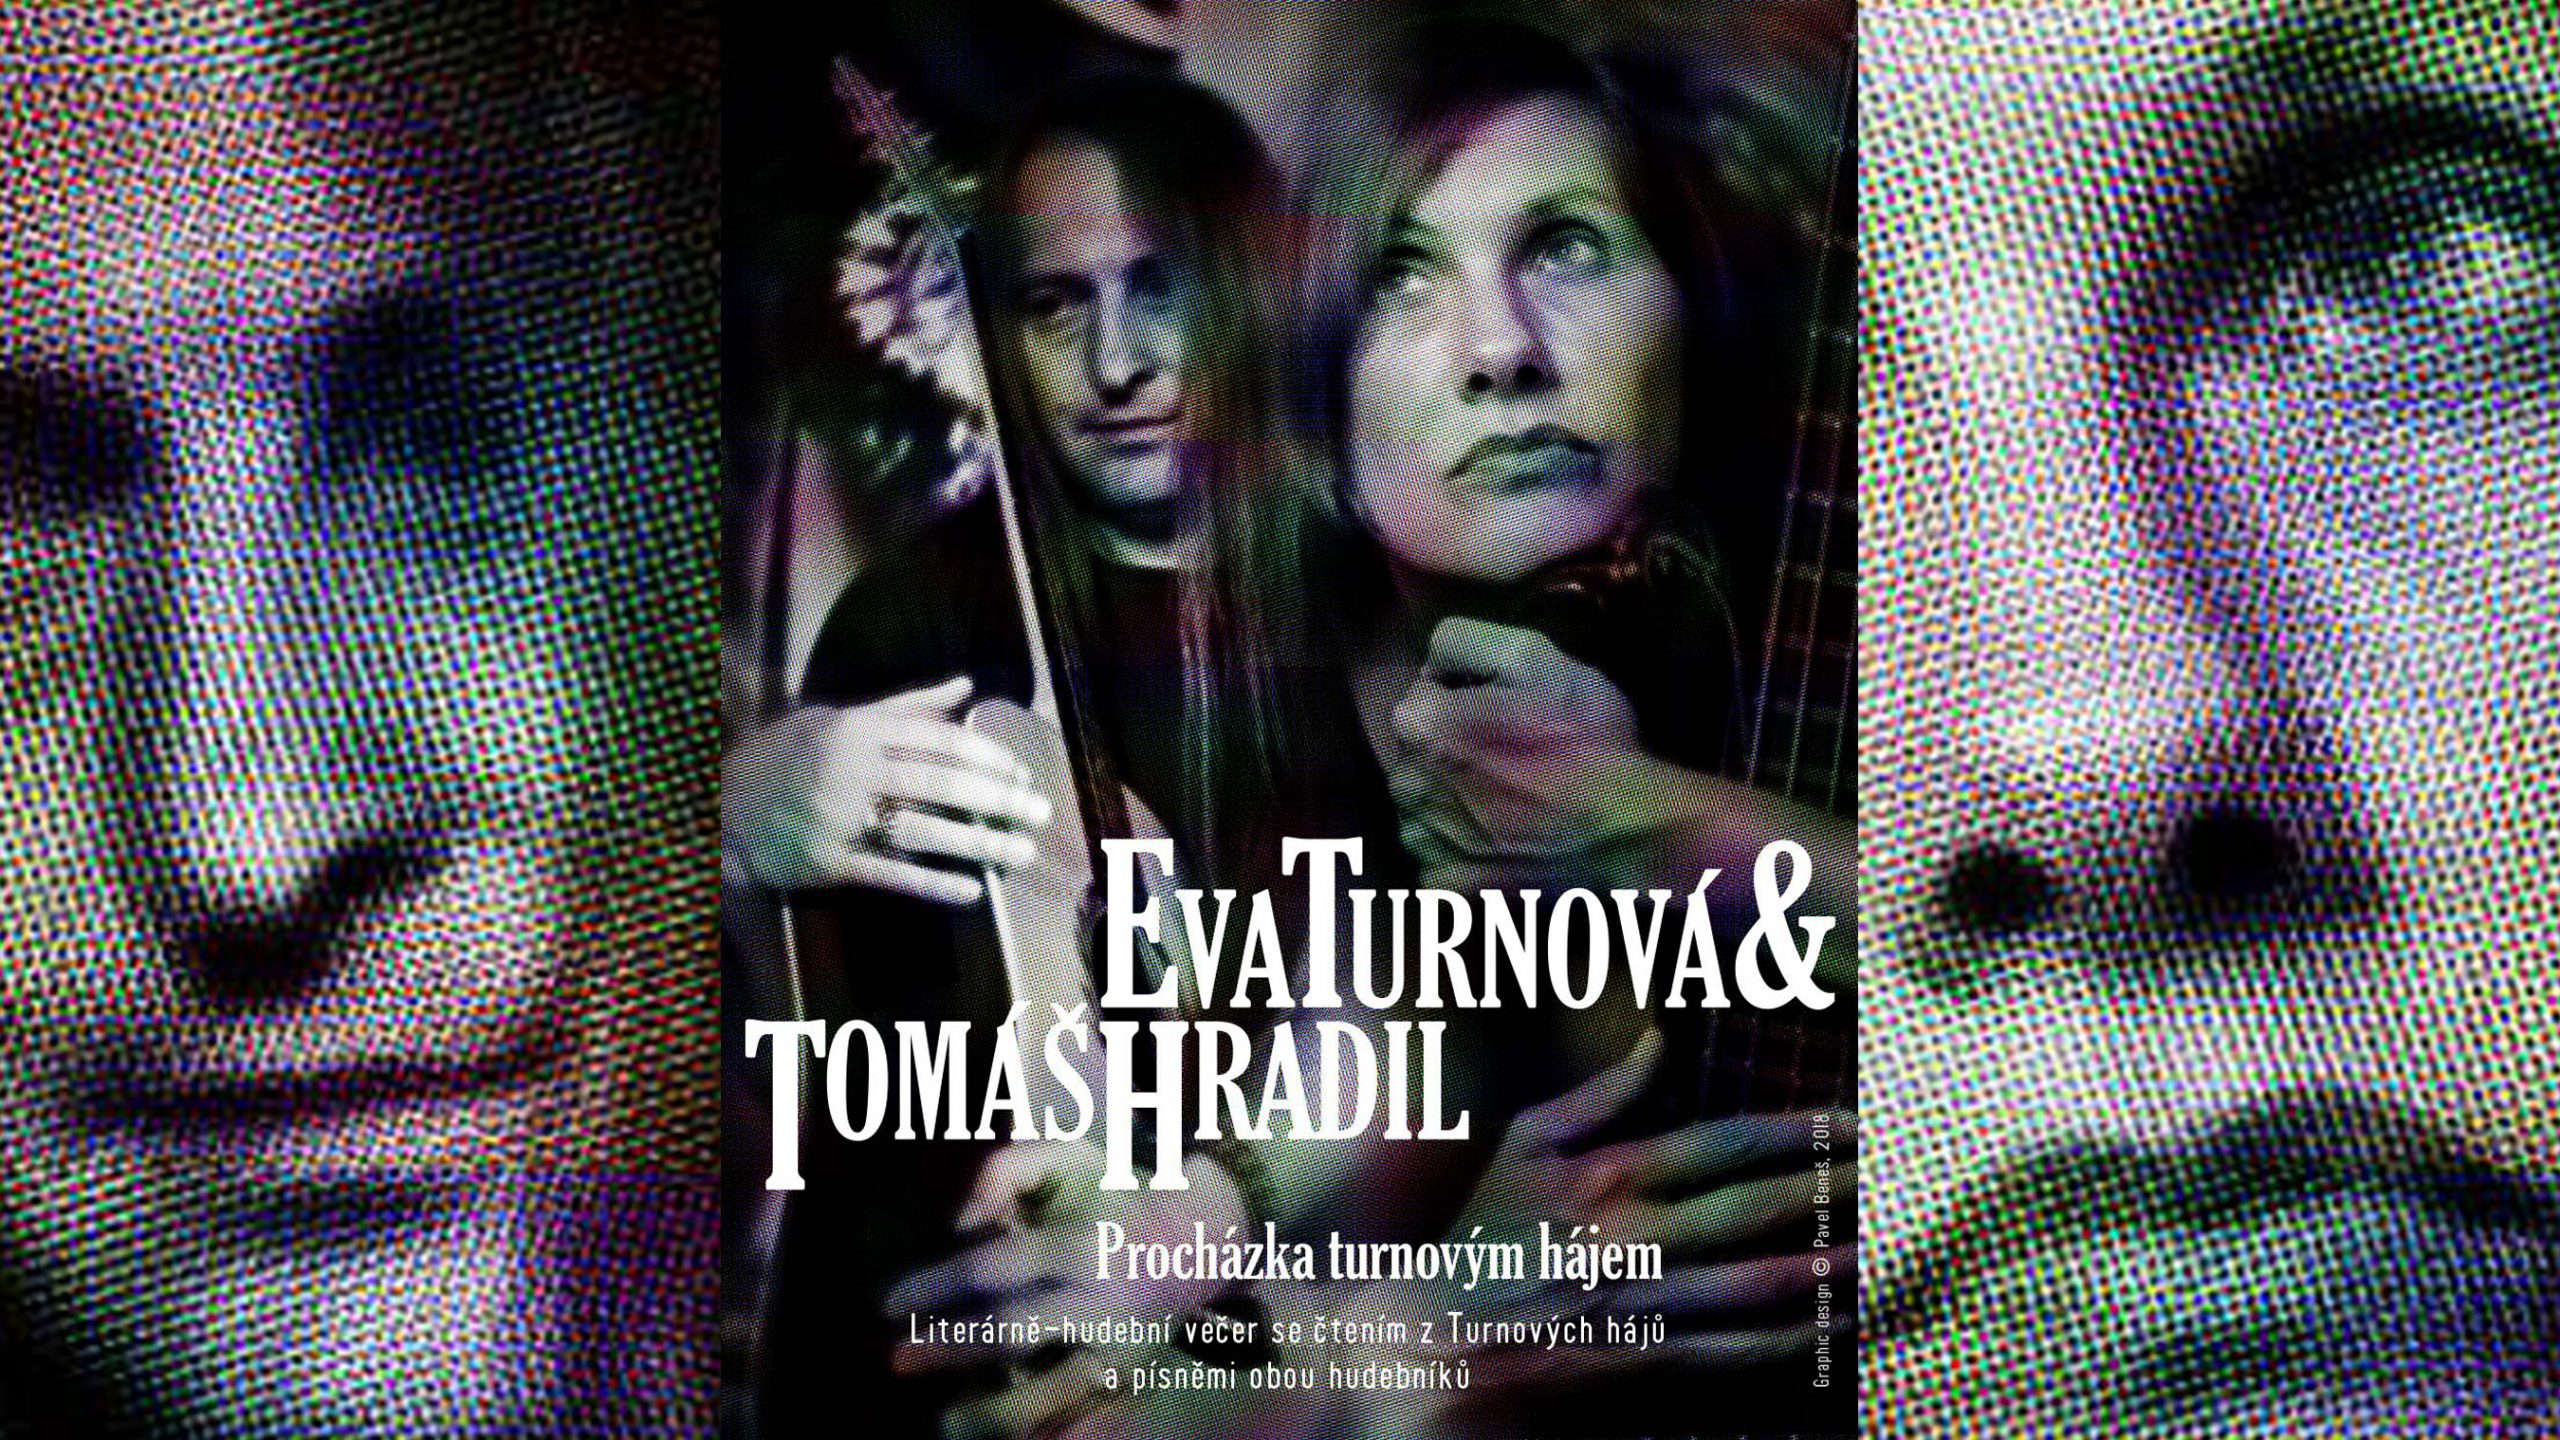 Eva Turnová & Tomáš Hradil - Procházka Turnovým Hájem